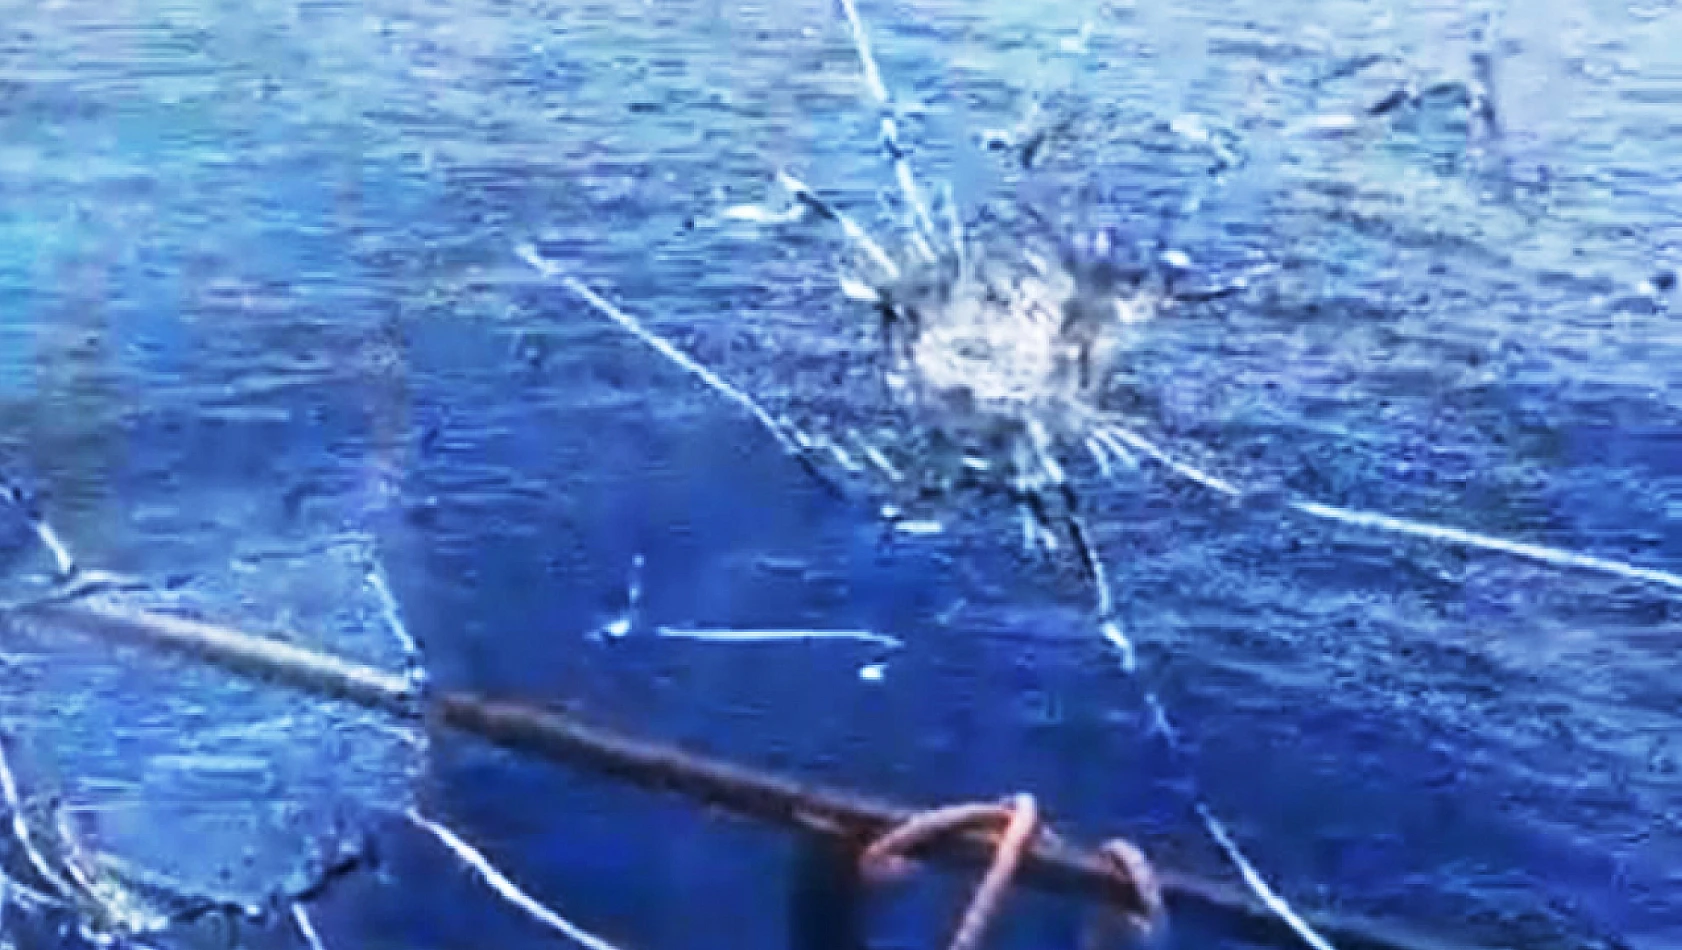 Suriye rejimi güvenlik güçleri Türk balıkçı teknesine saldırdı